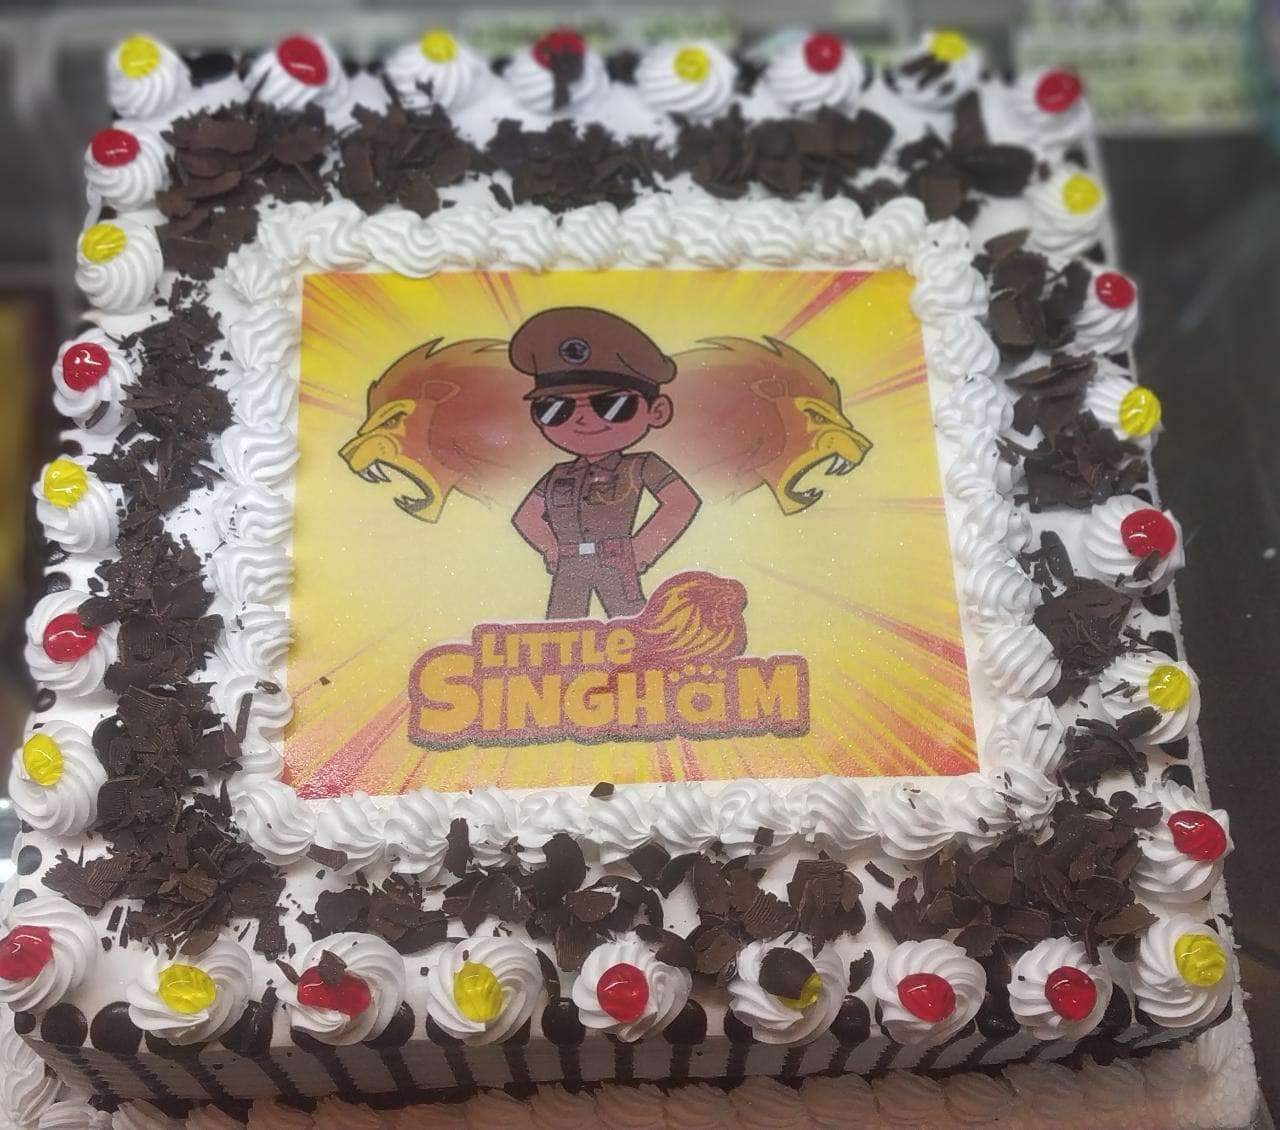 Little Singham cake, | Instagram